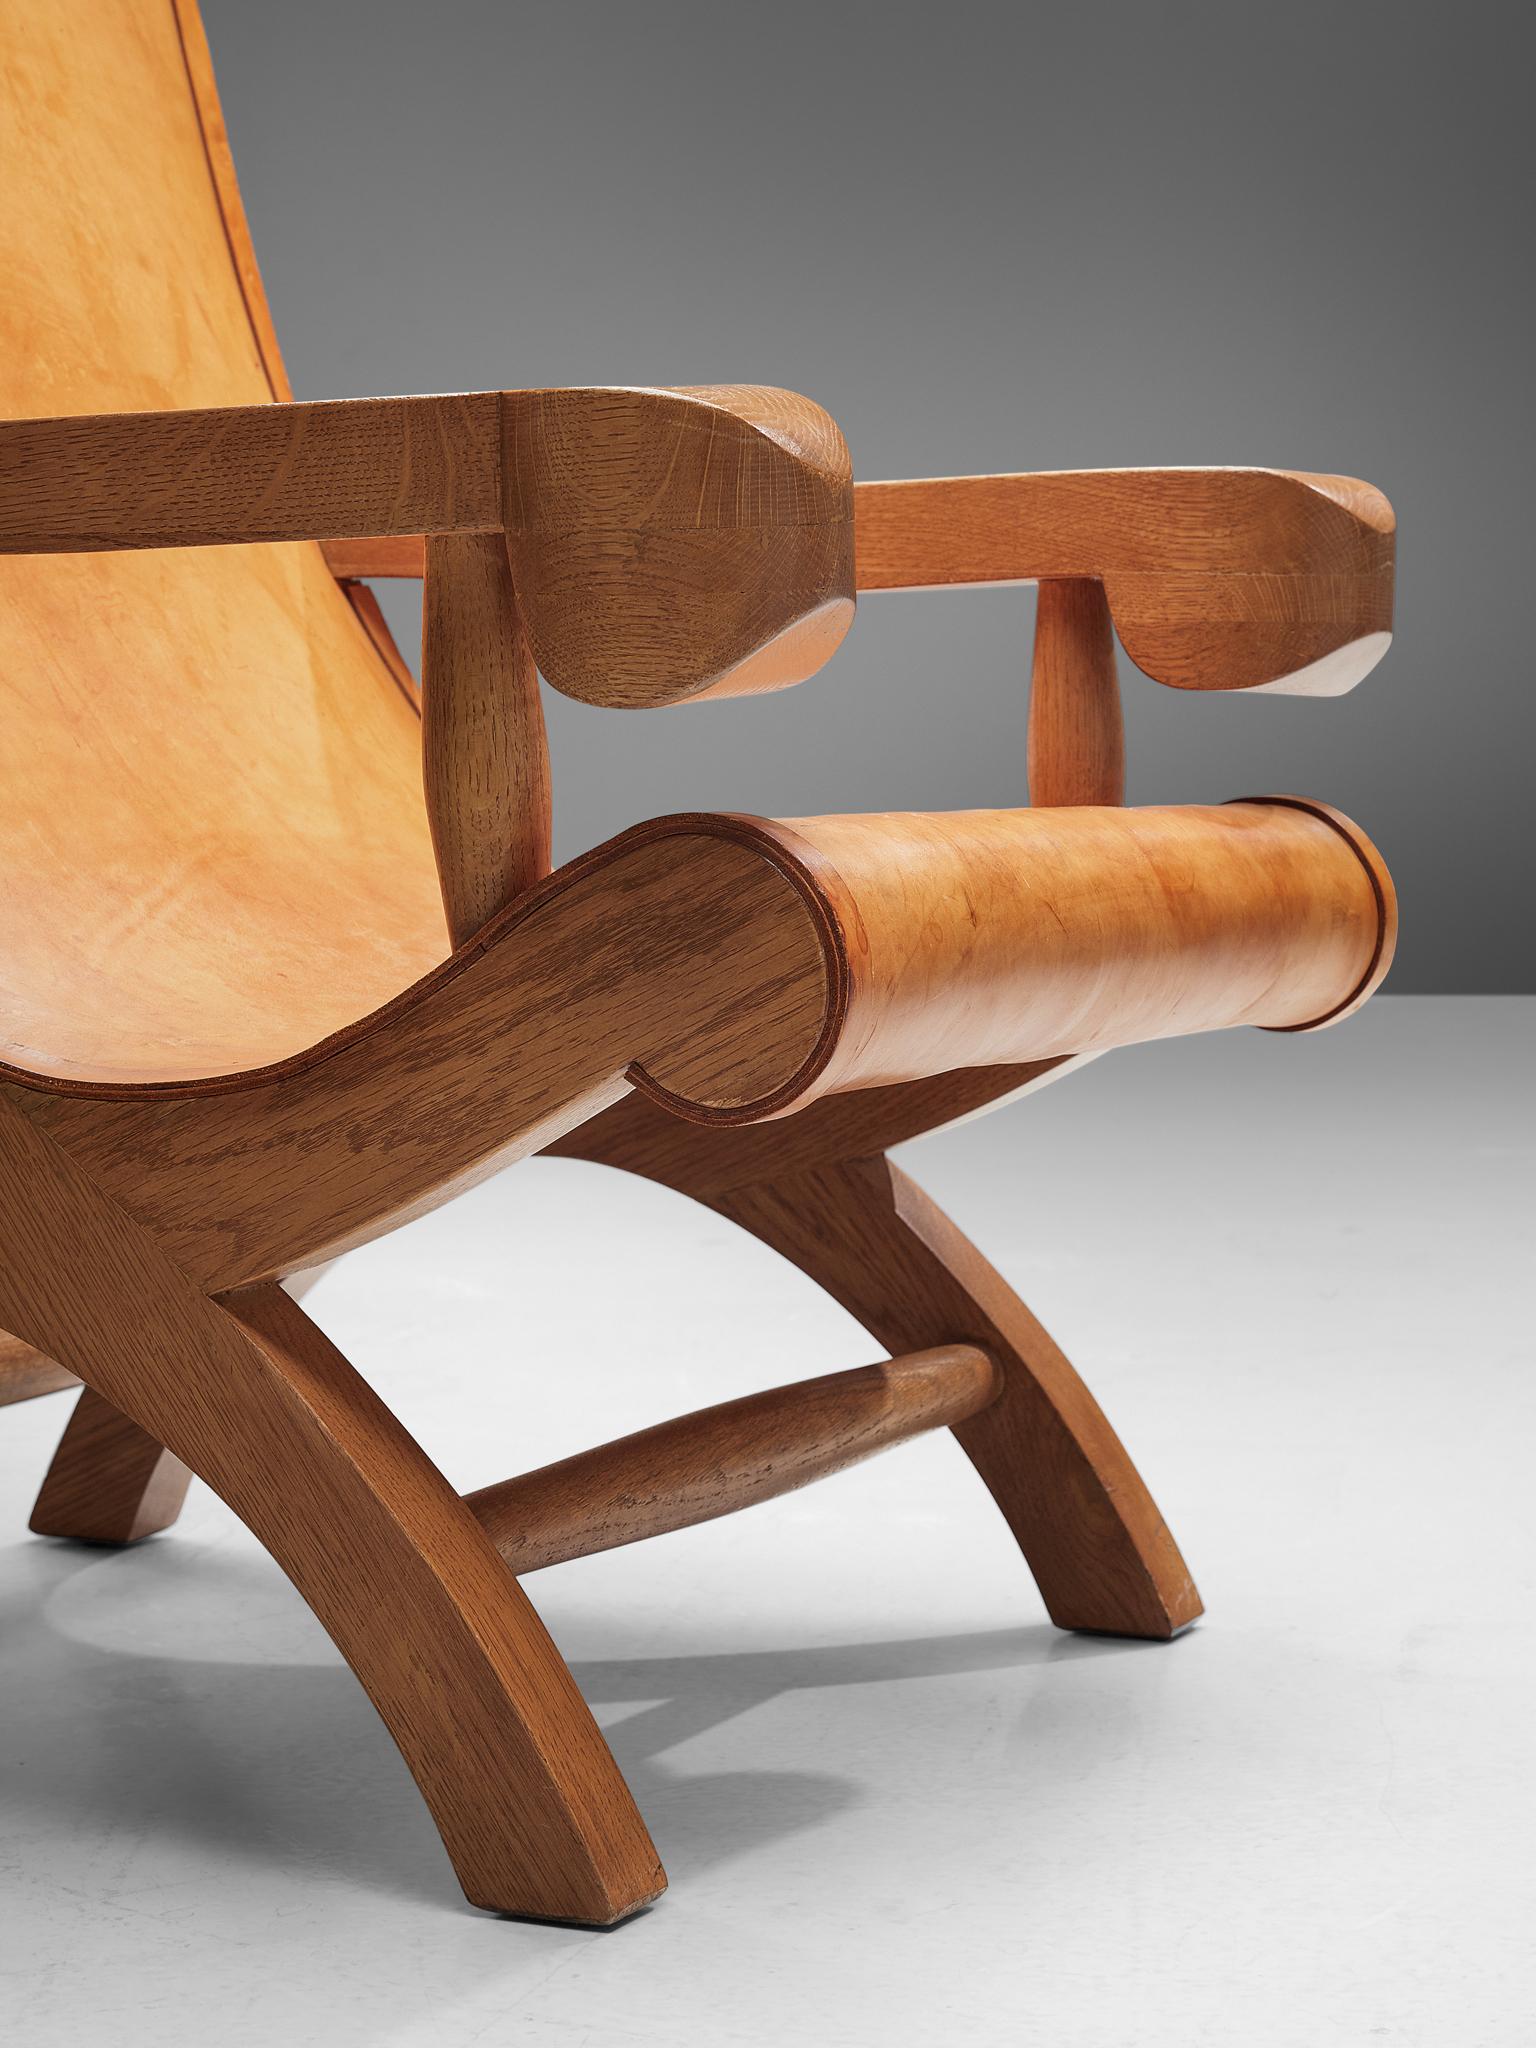 Clara Porset  'Butaque' Chairs in Cognac Leather 1